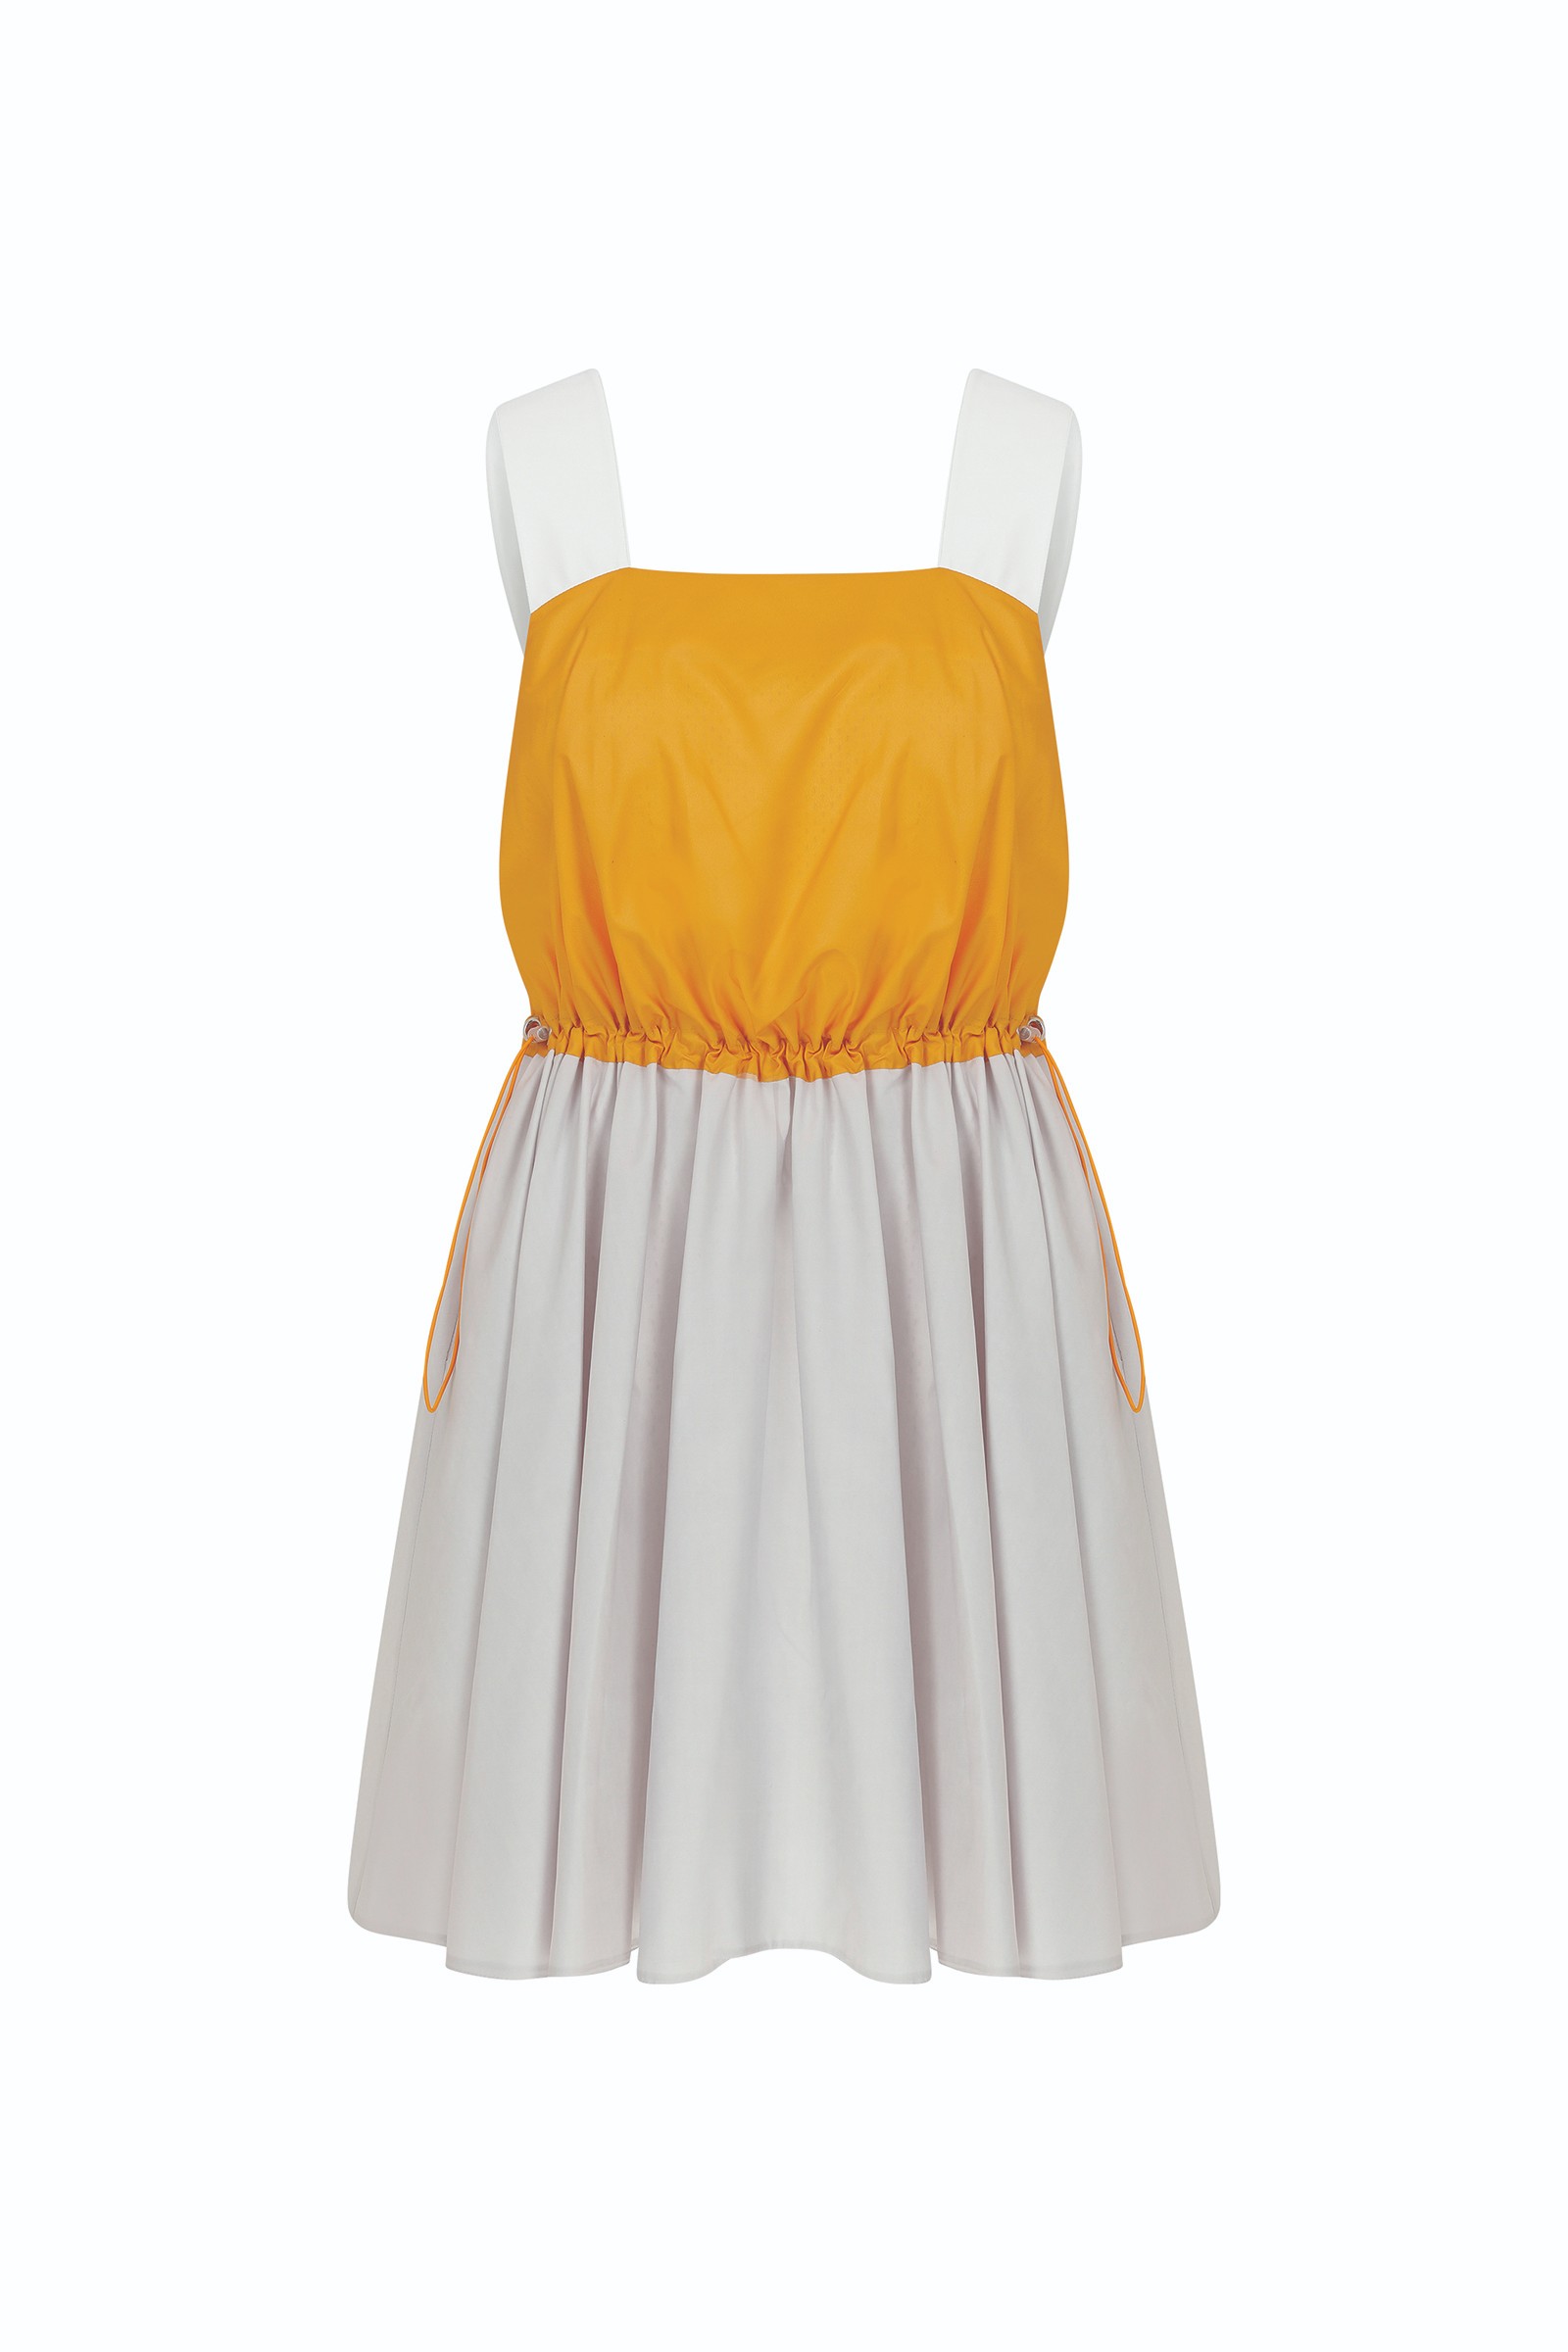 Erin Multicolor Dress 4